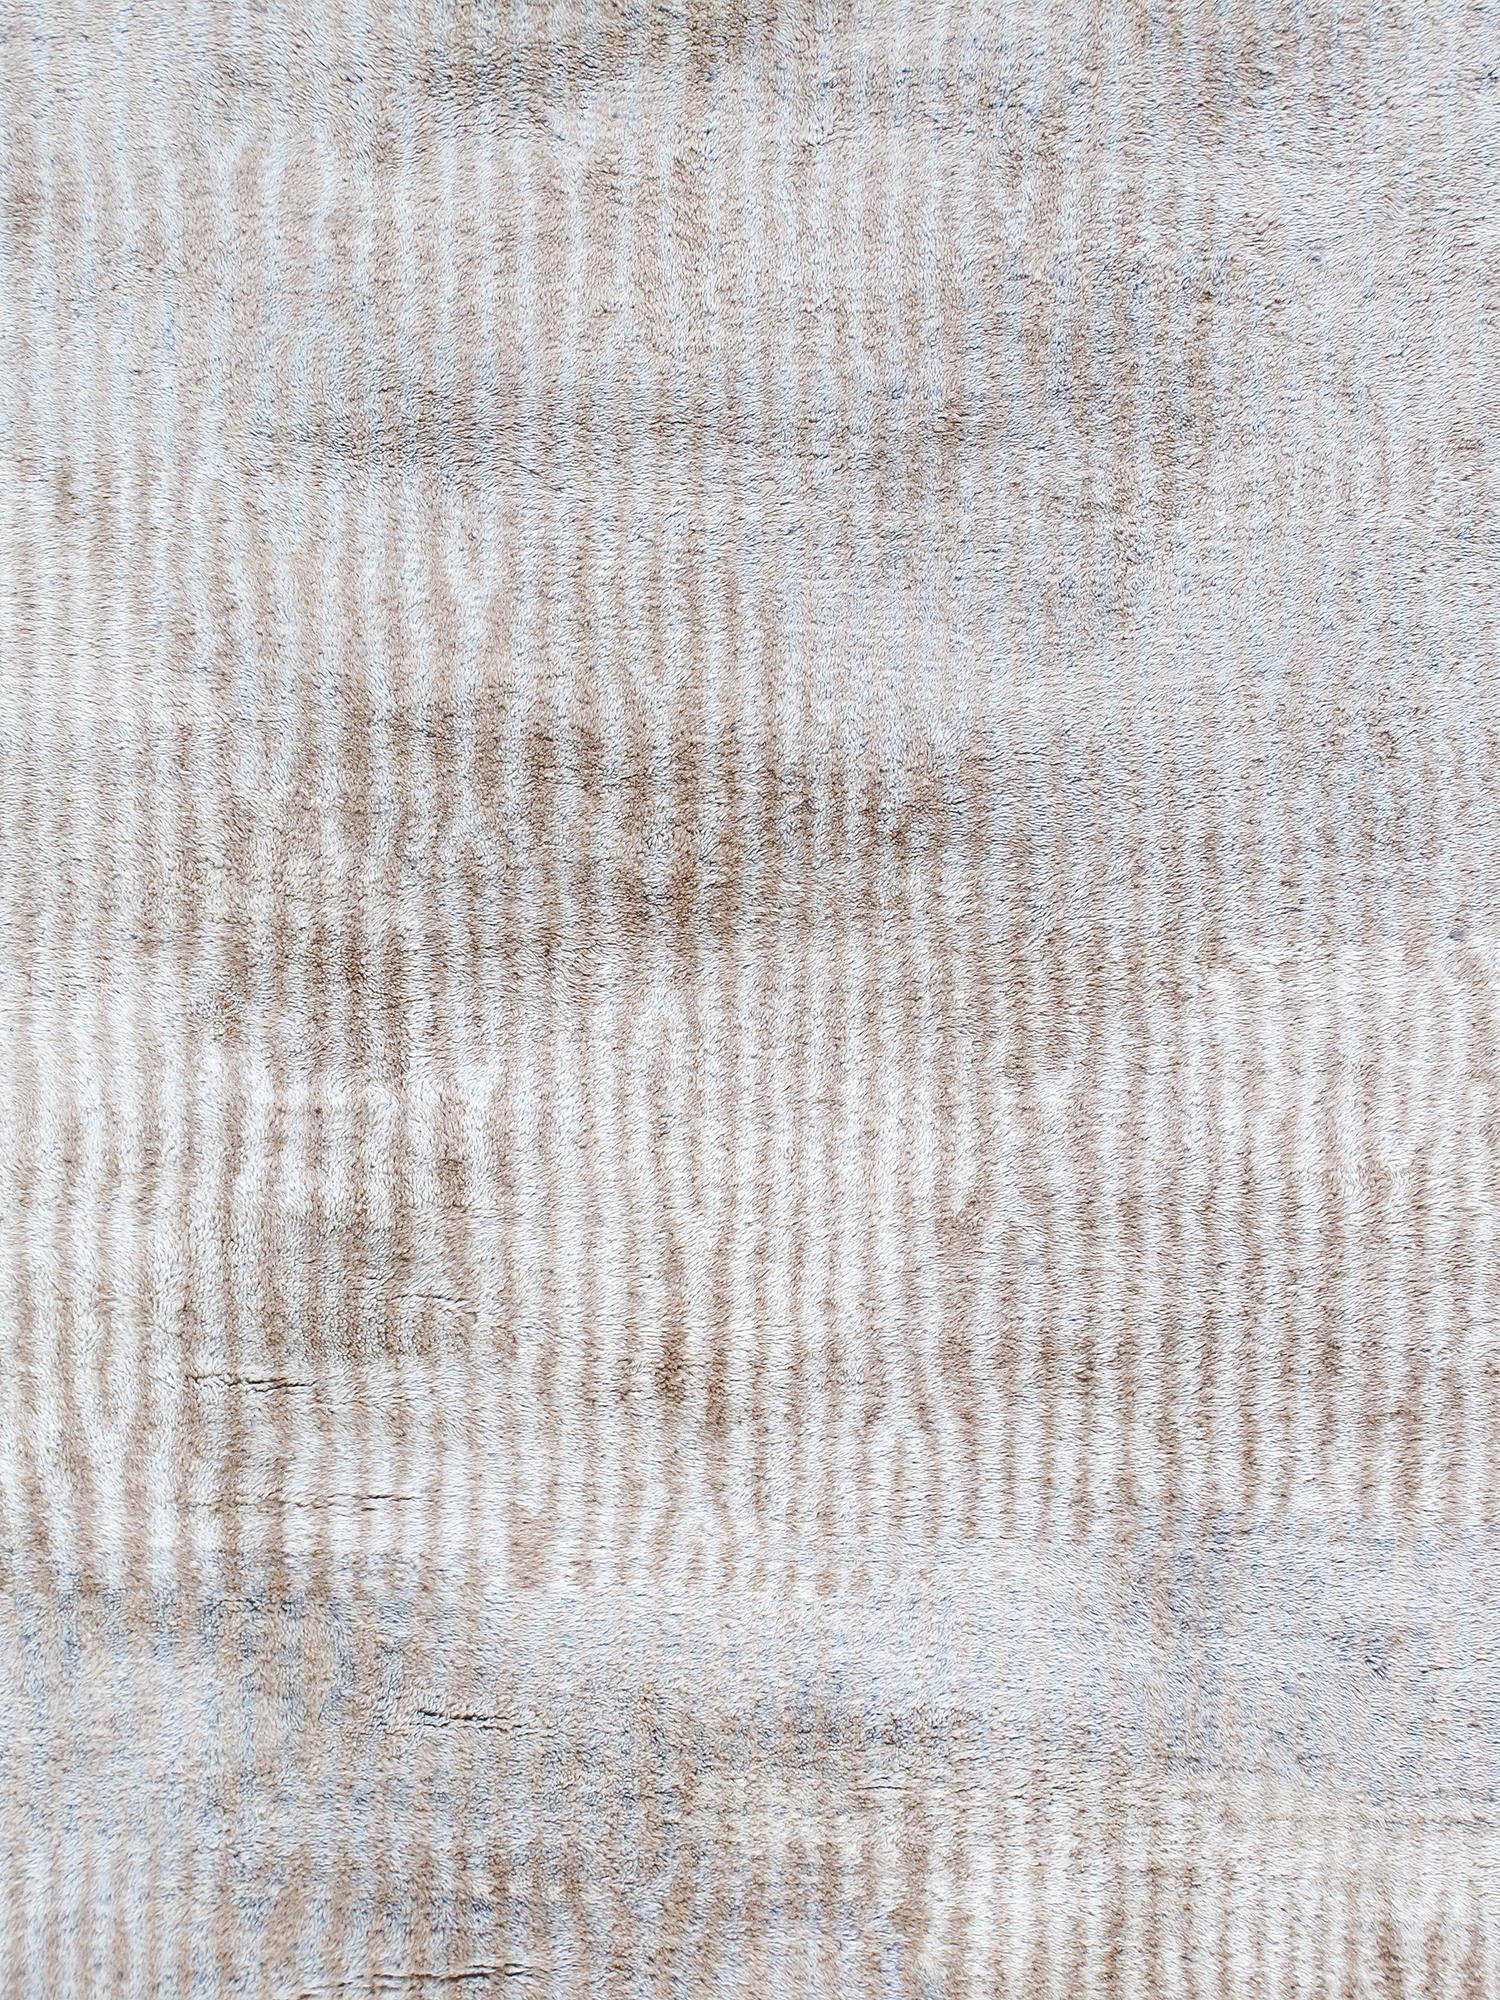 Dieser original marokkanische Teppich ist den Beni Ourain-Teppichen nachempfunden, die jahrhundertelang von den nomadischen Berberstämmen in Nordafrika hergestellt wurden.  Die Beni Ourain-Teppiche zeichnen sich durch ihre geometrischen Linien aus,